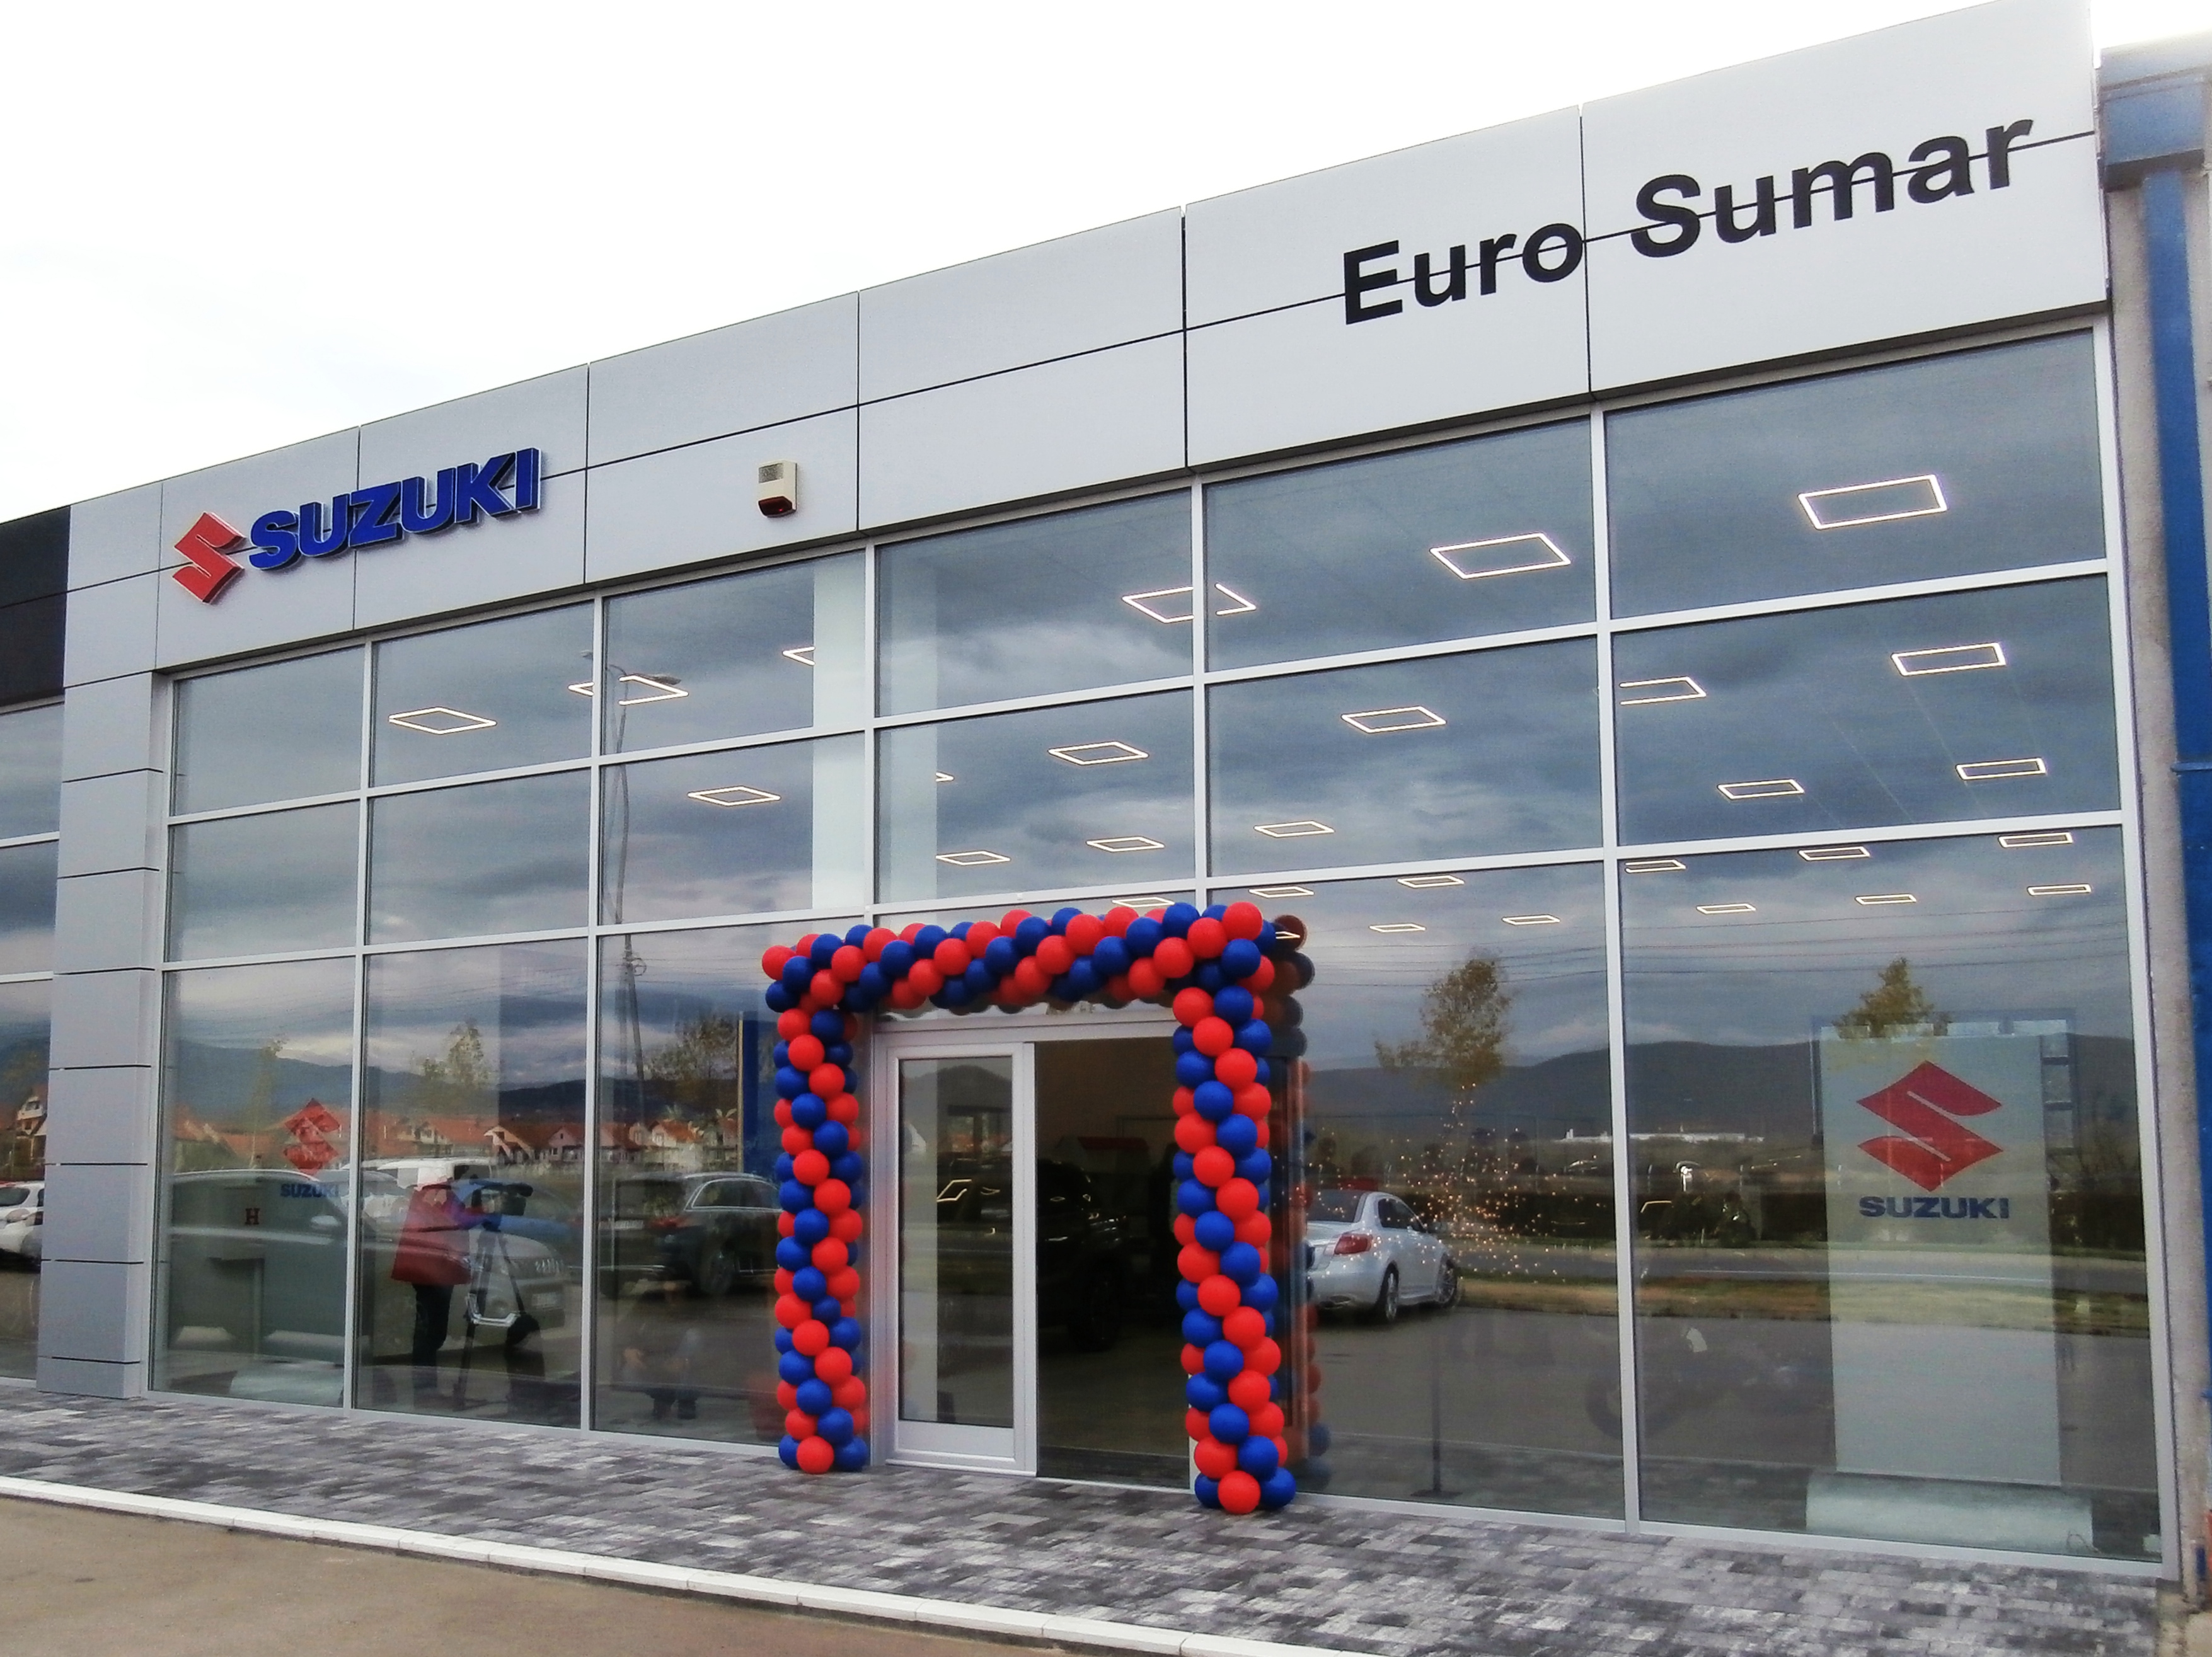 Euro Sumar – Suzuki automobili i motocikli ponovo u Nišu